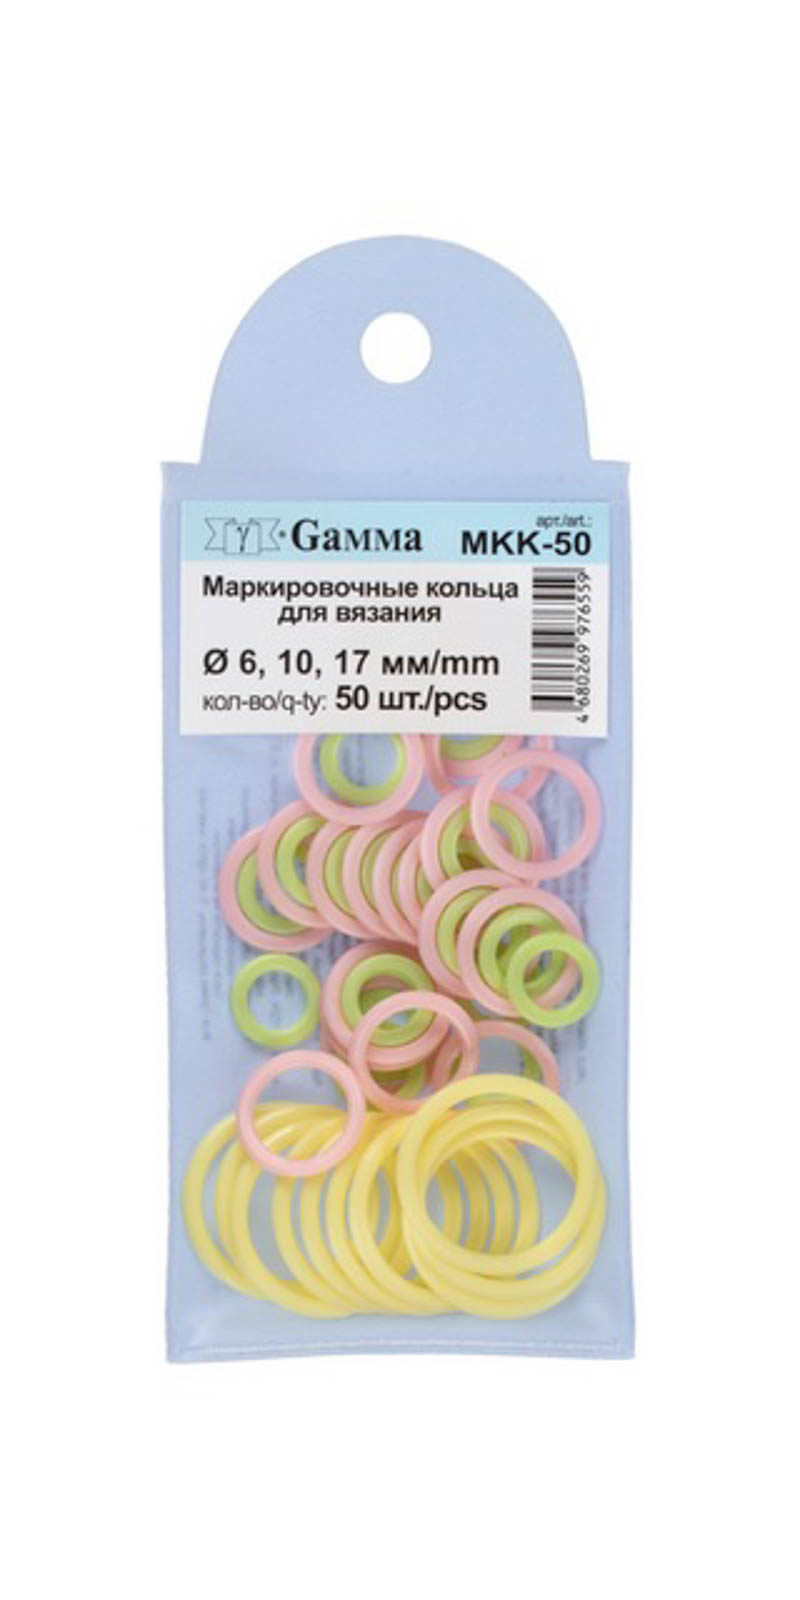 Маркировочные кольца "Gamma" MKK-50 для вязания, пластик 50 шт.